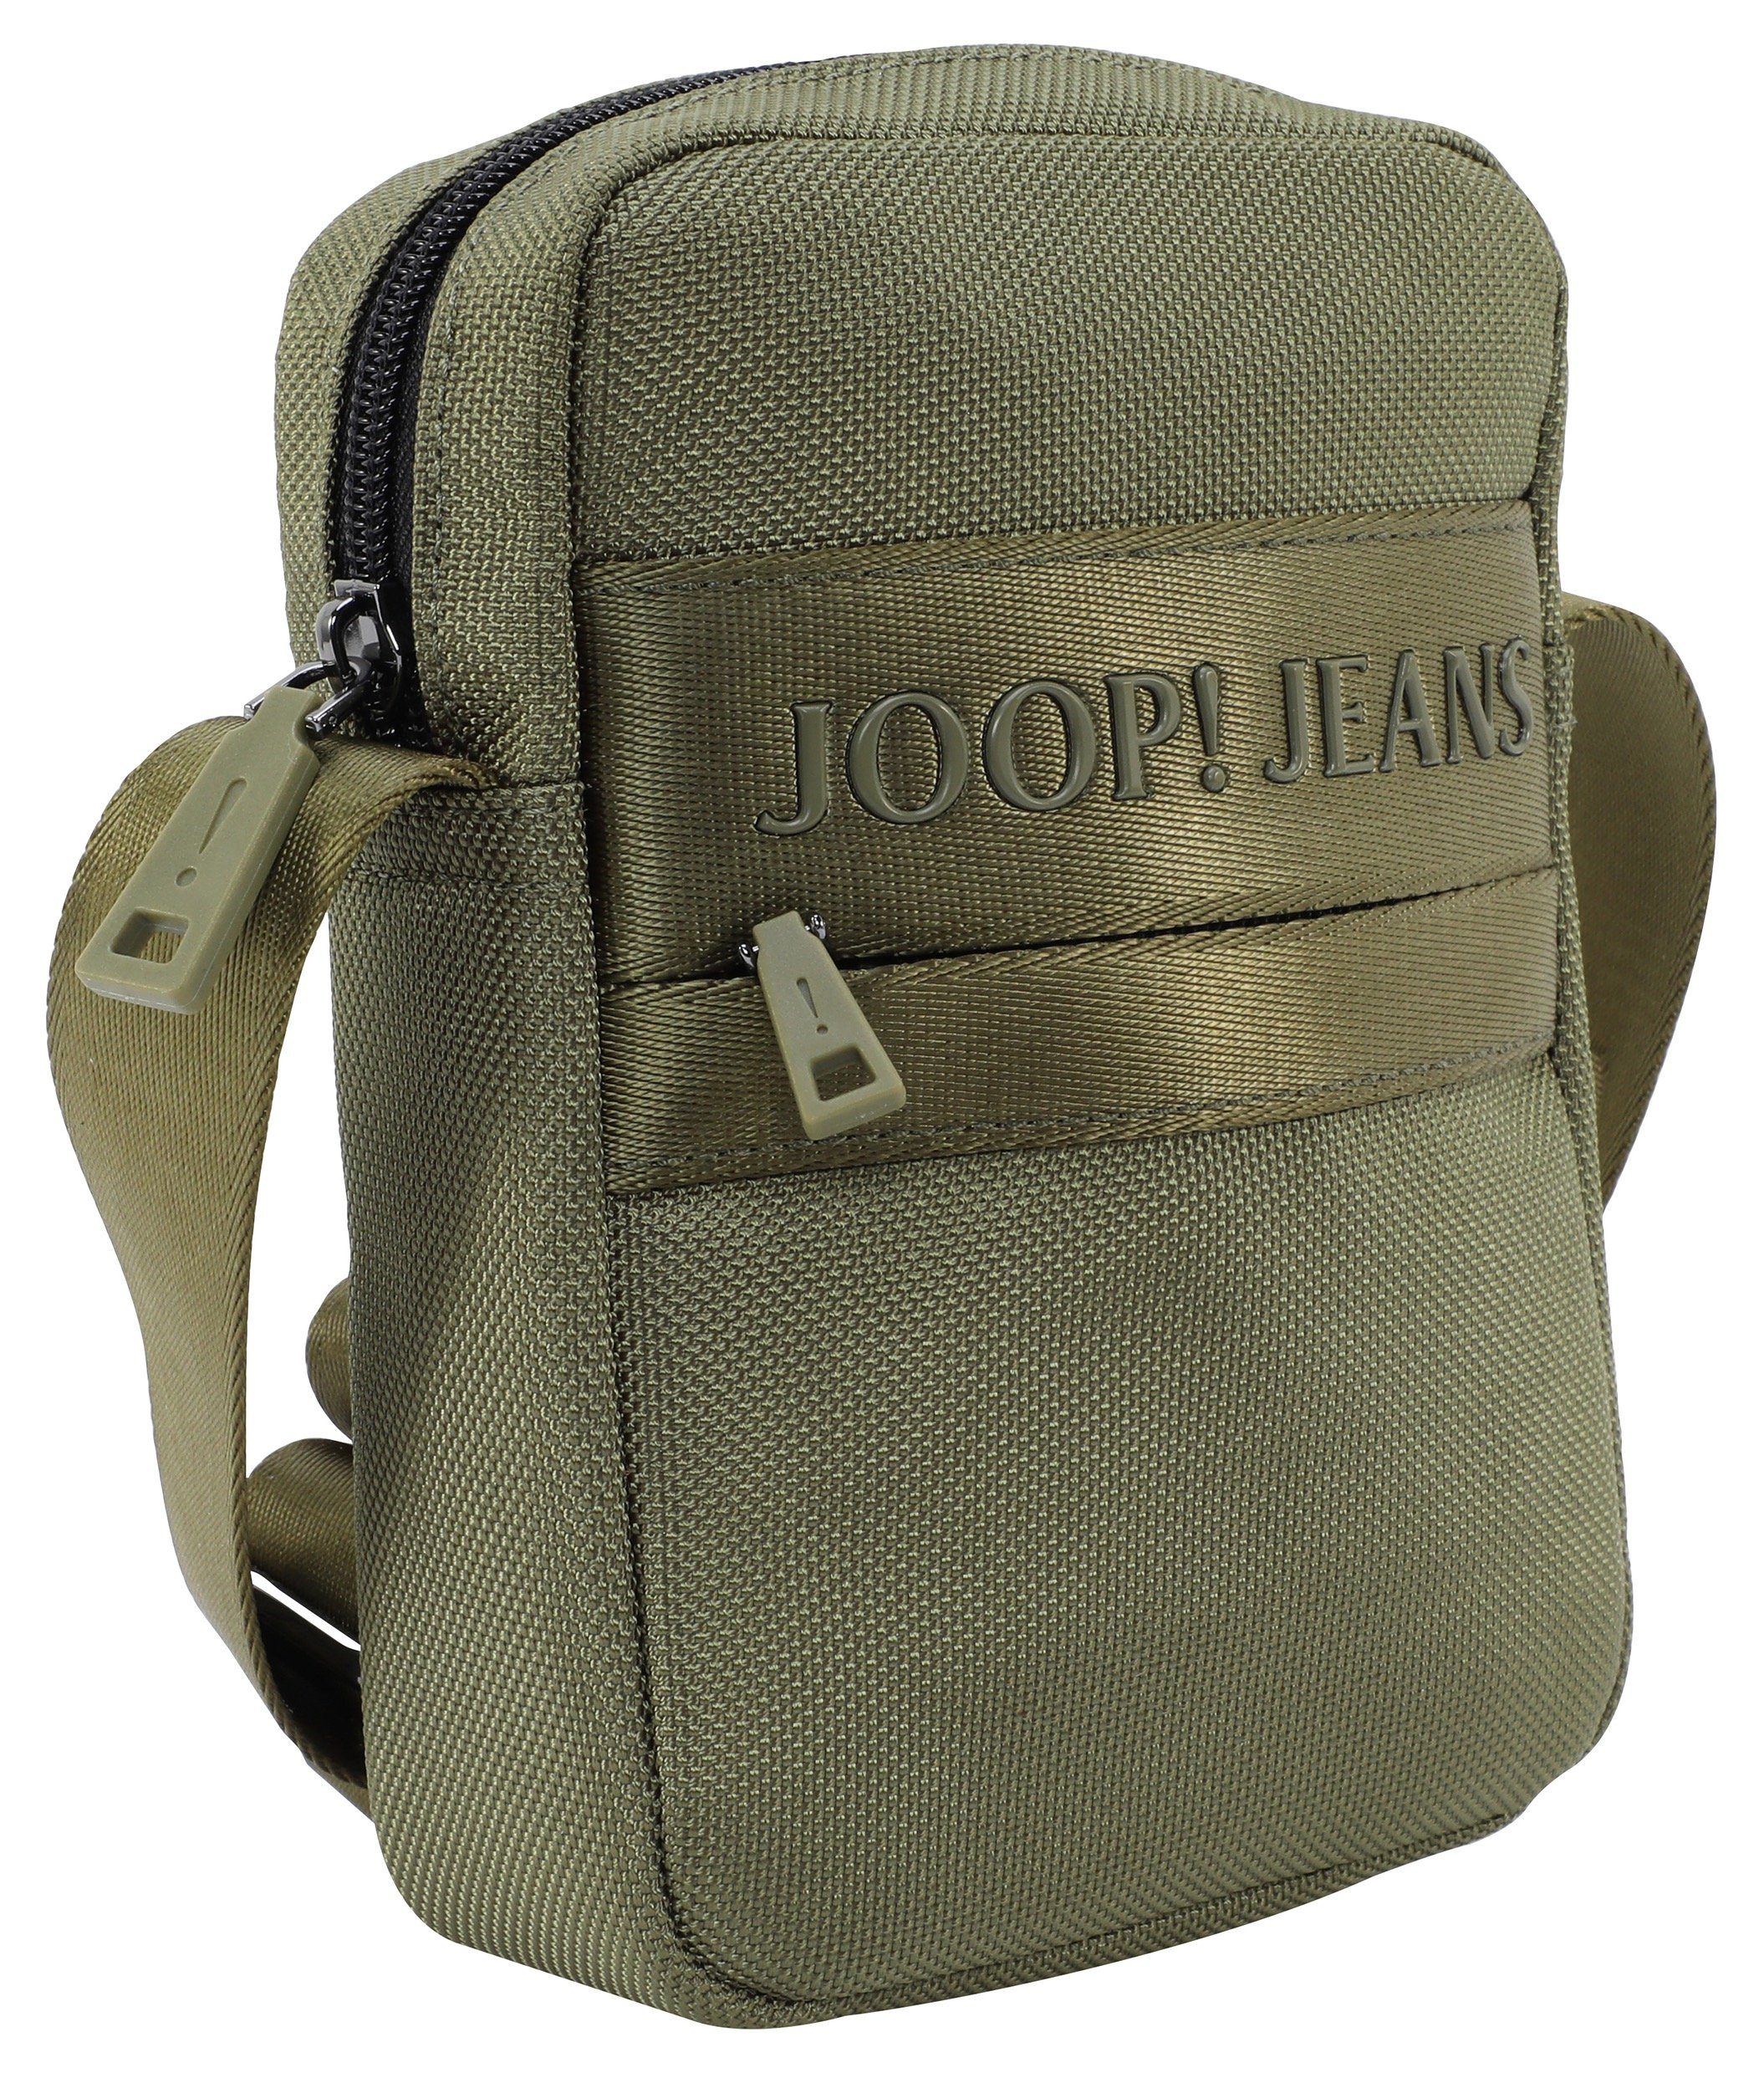 Umhängetasche shoulderbag im Joop Jeans rafael dunkelgrün praktischen Design modica xsvz,